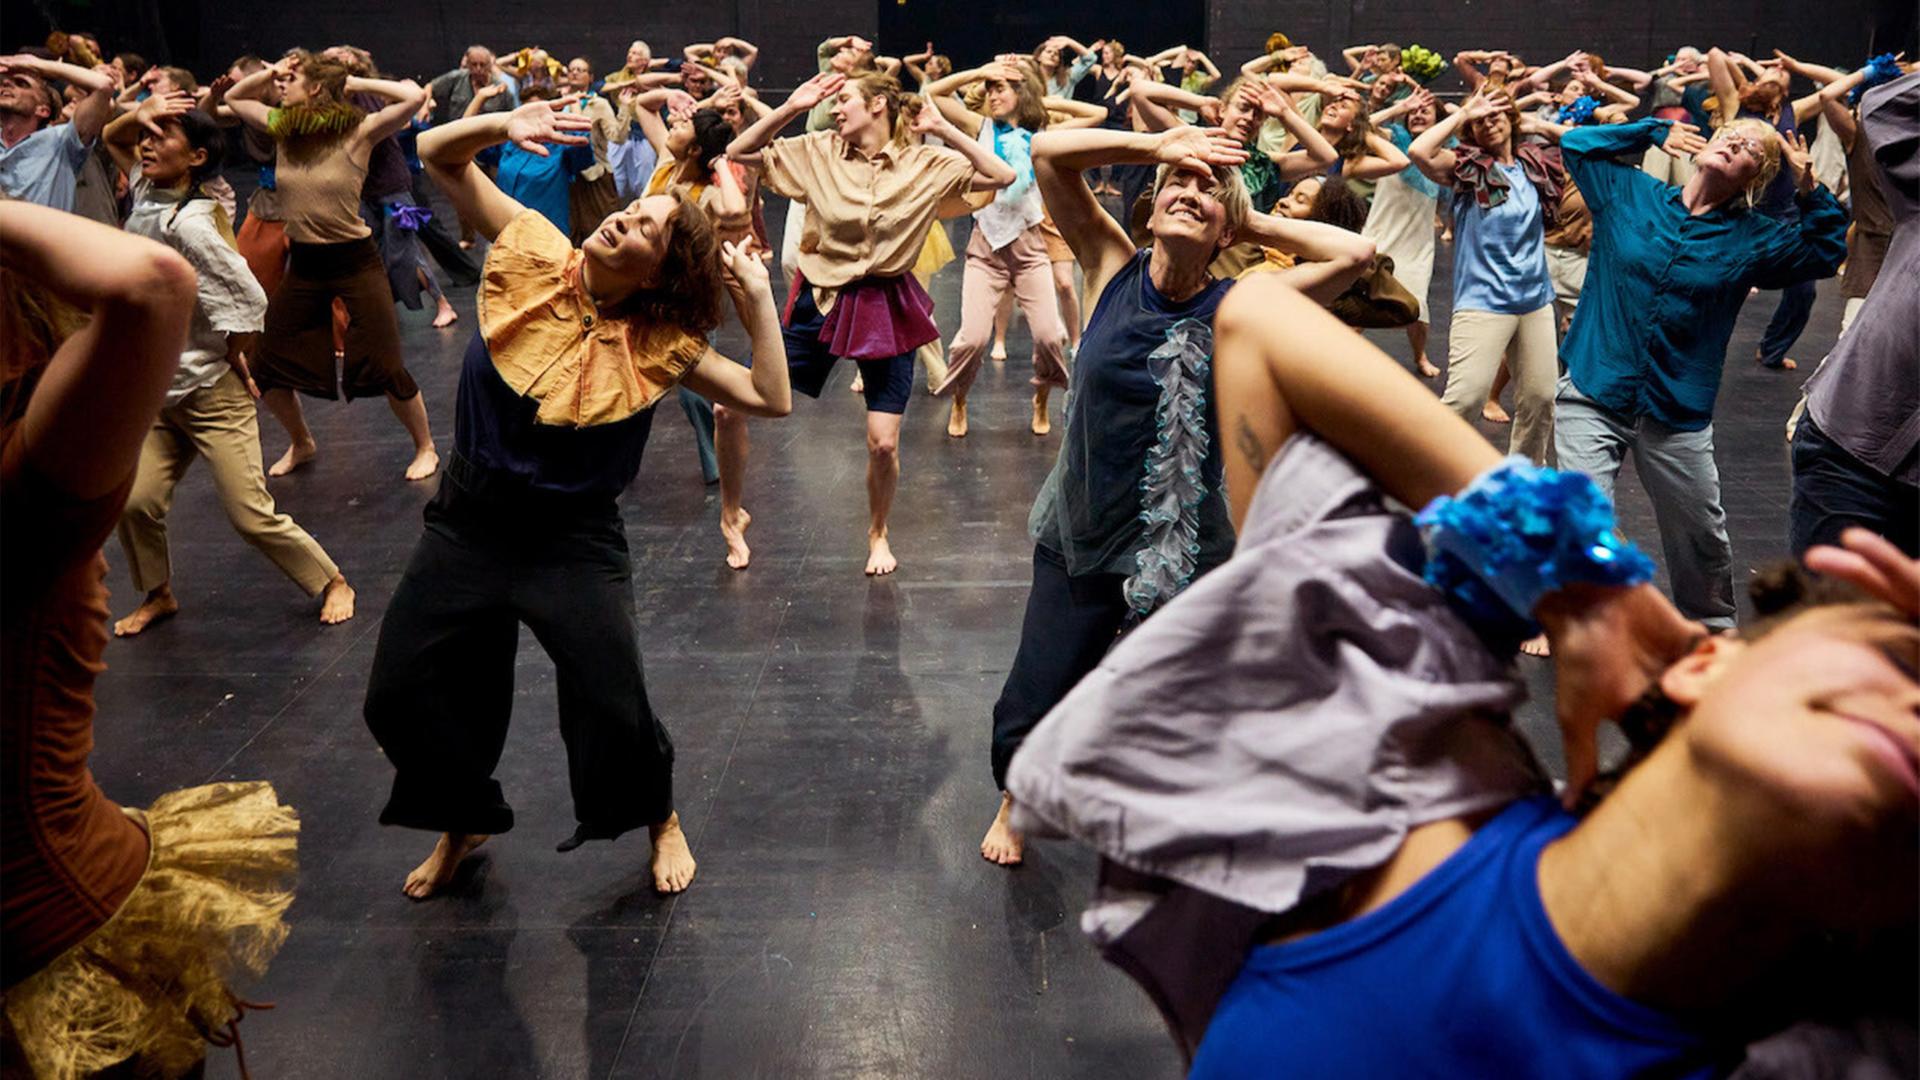 100 Laien on stage - Tanz in den kollektiven Rausch